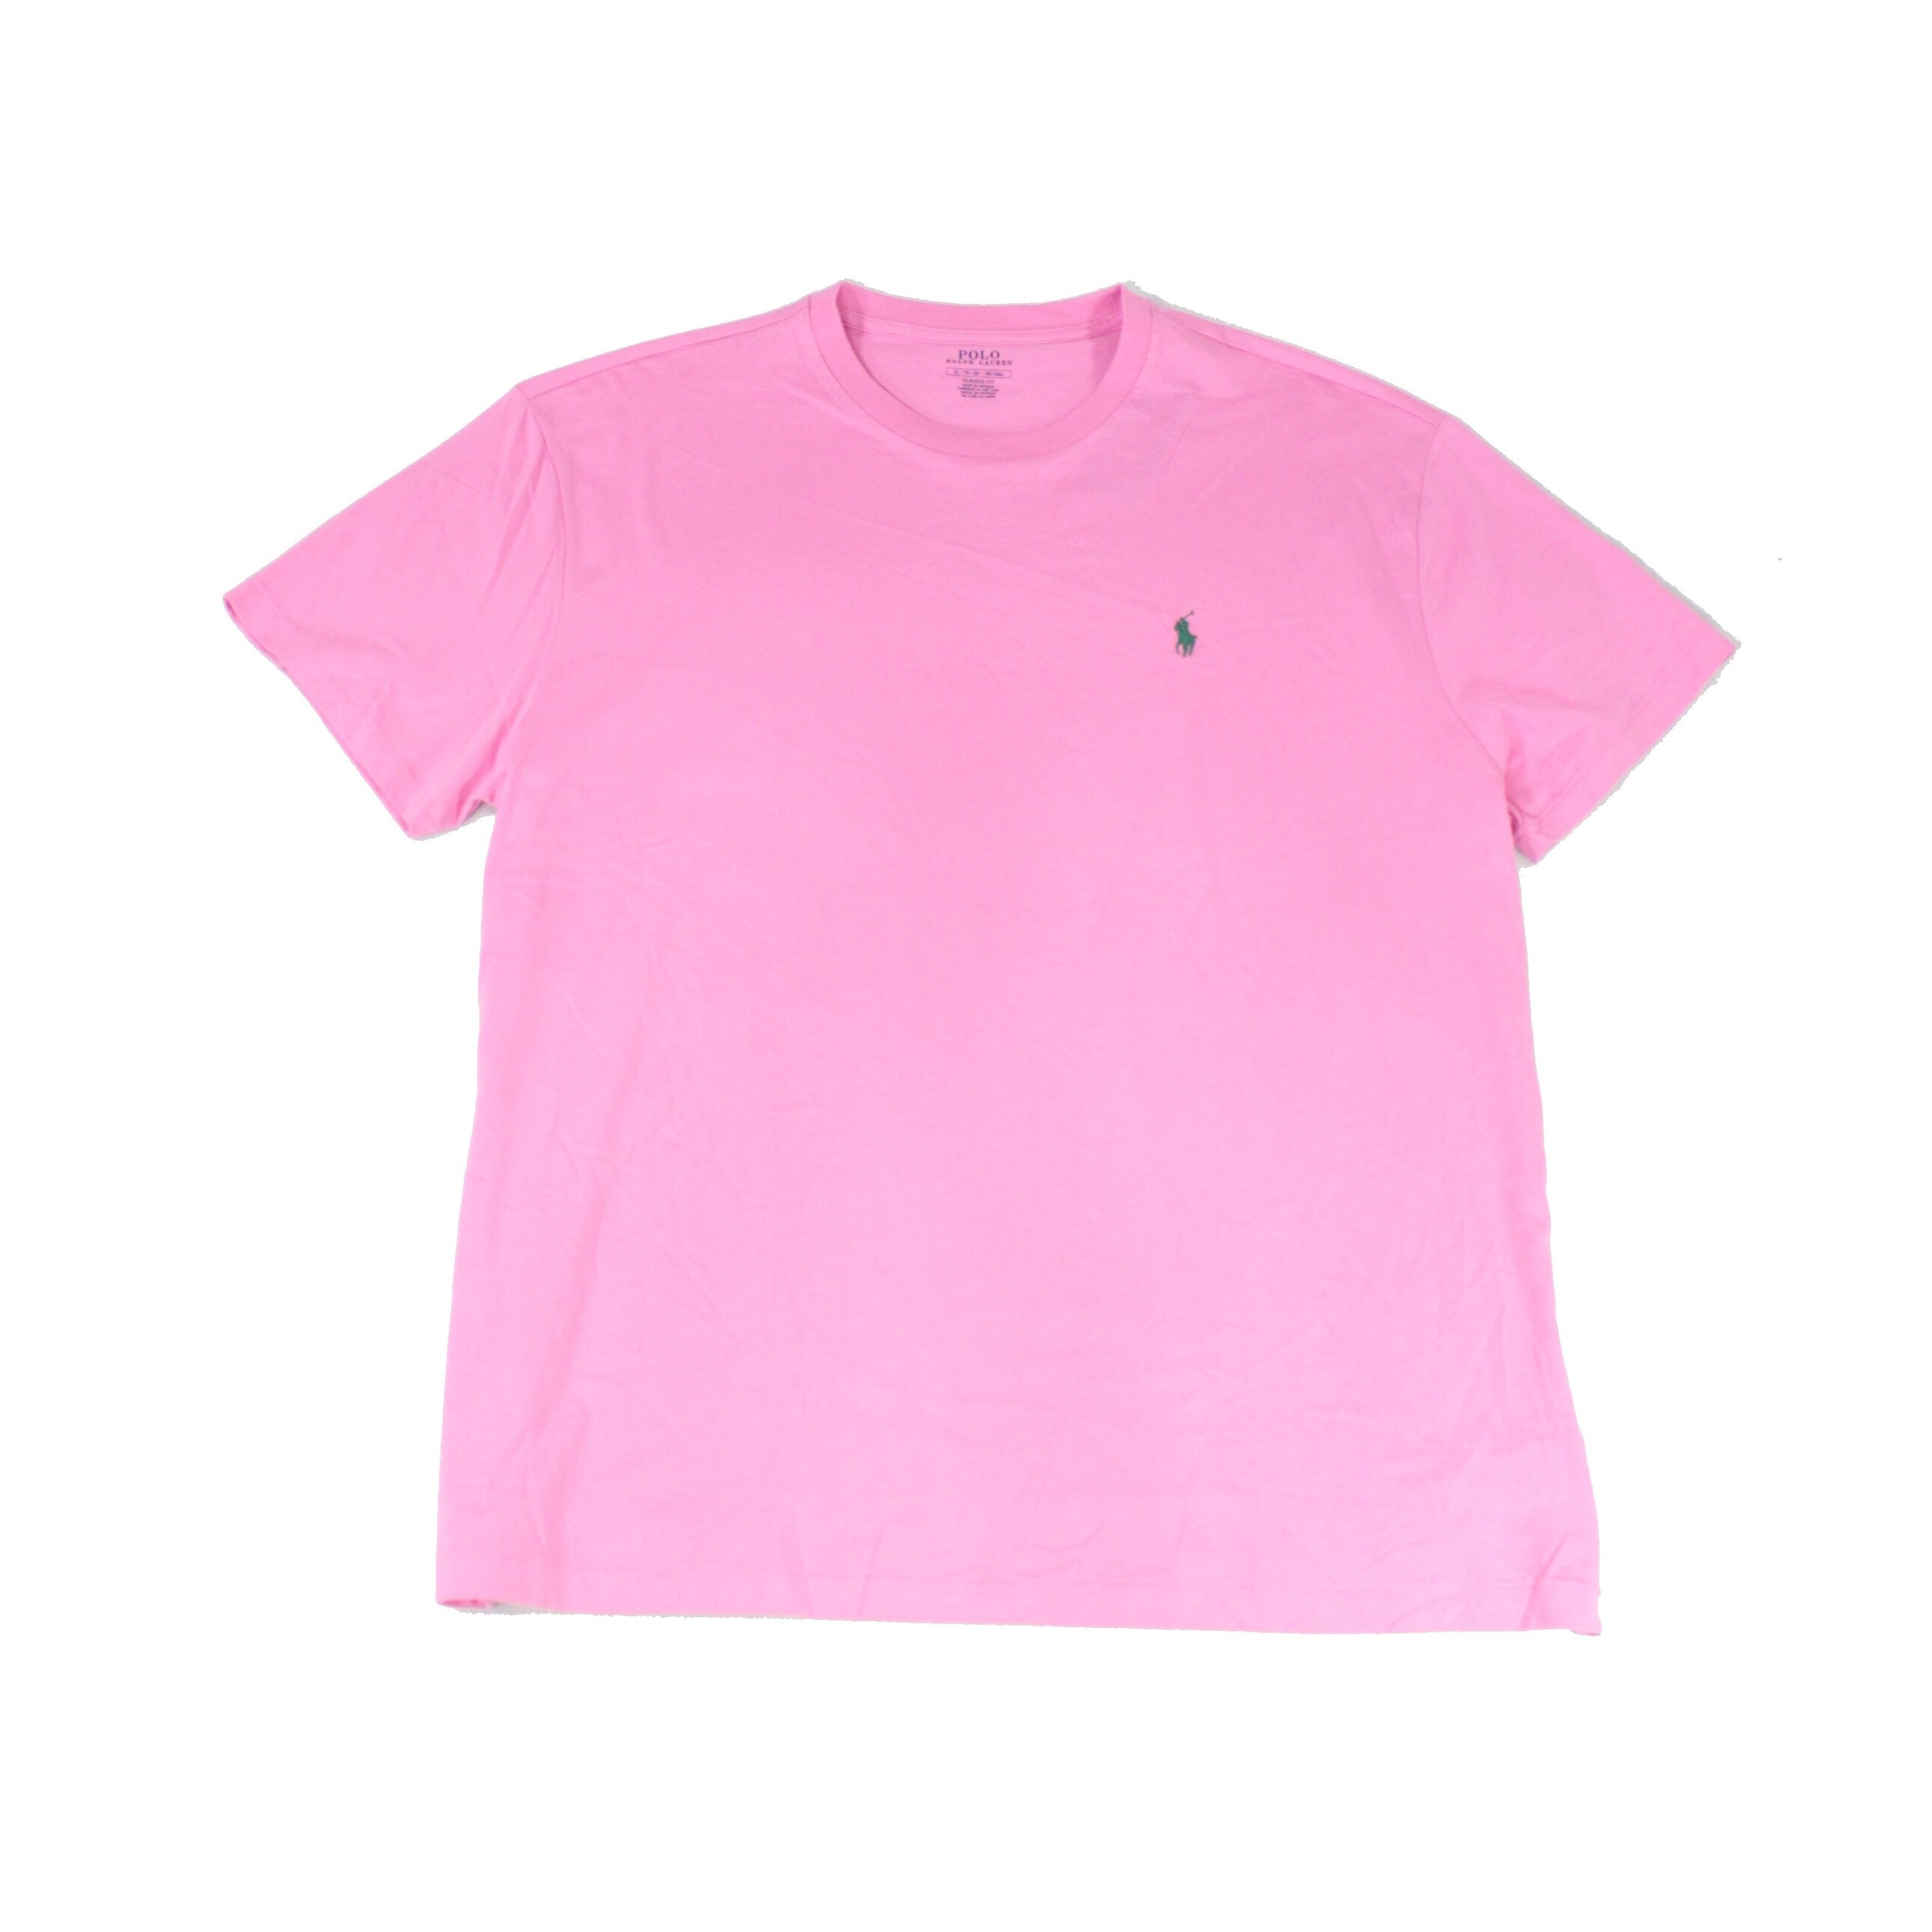 pink ralph lauren t shirt